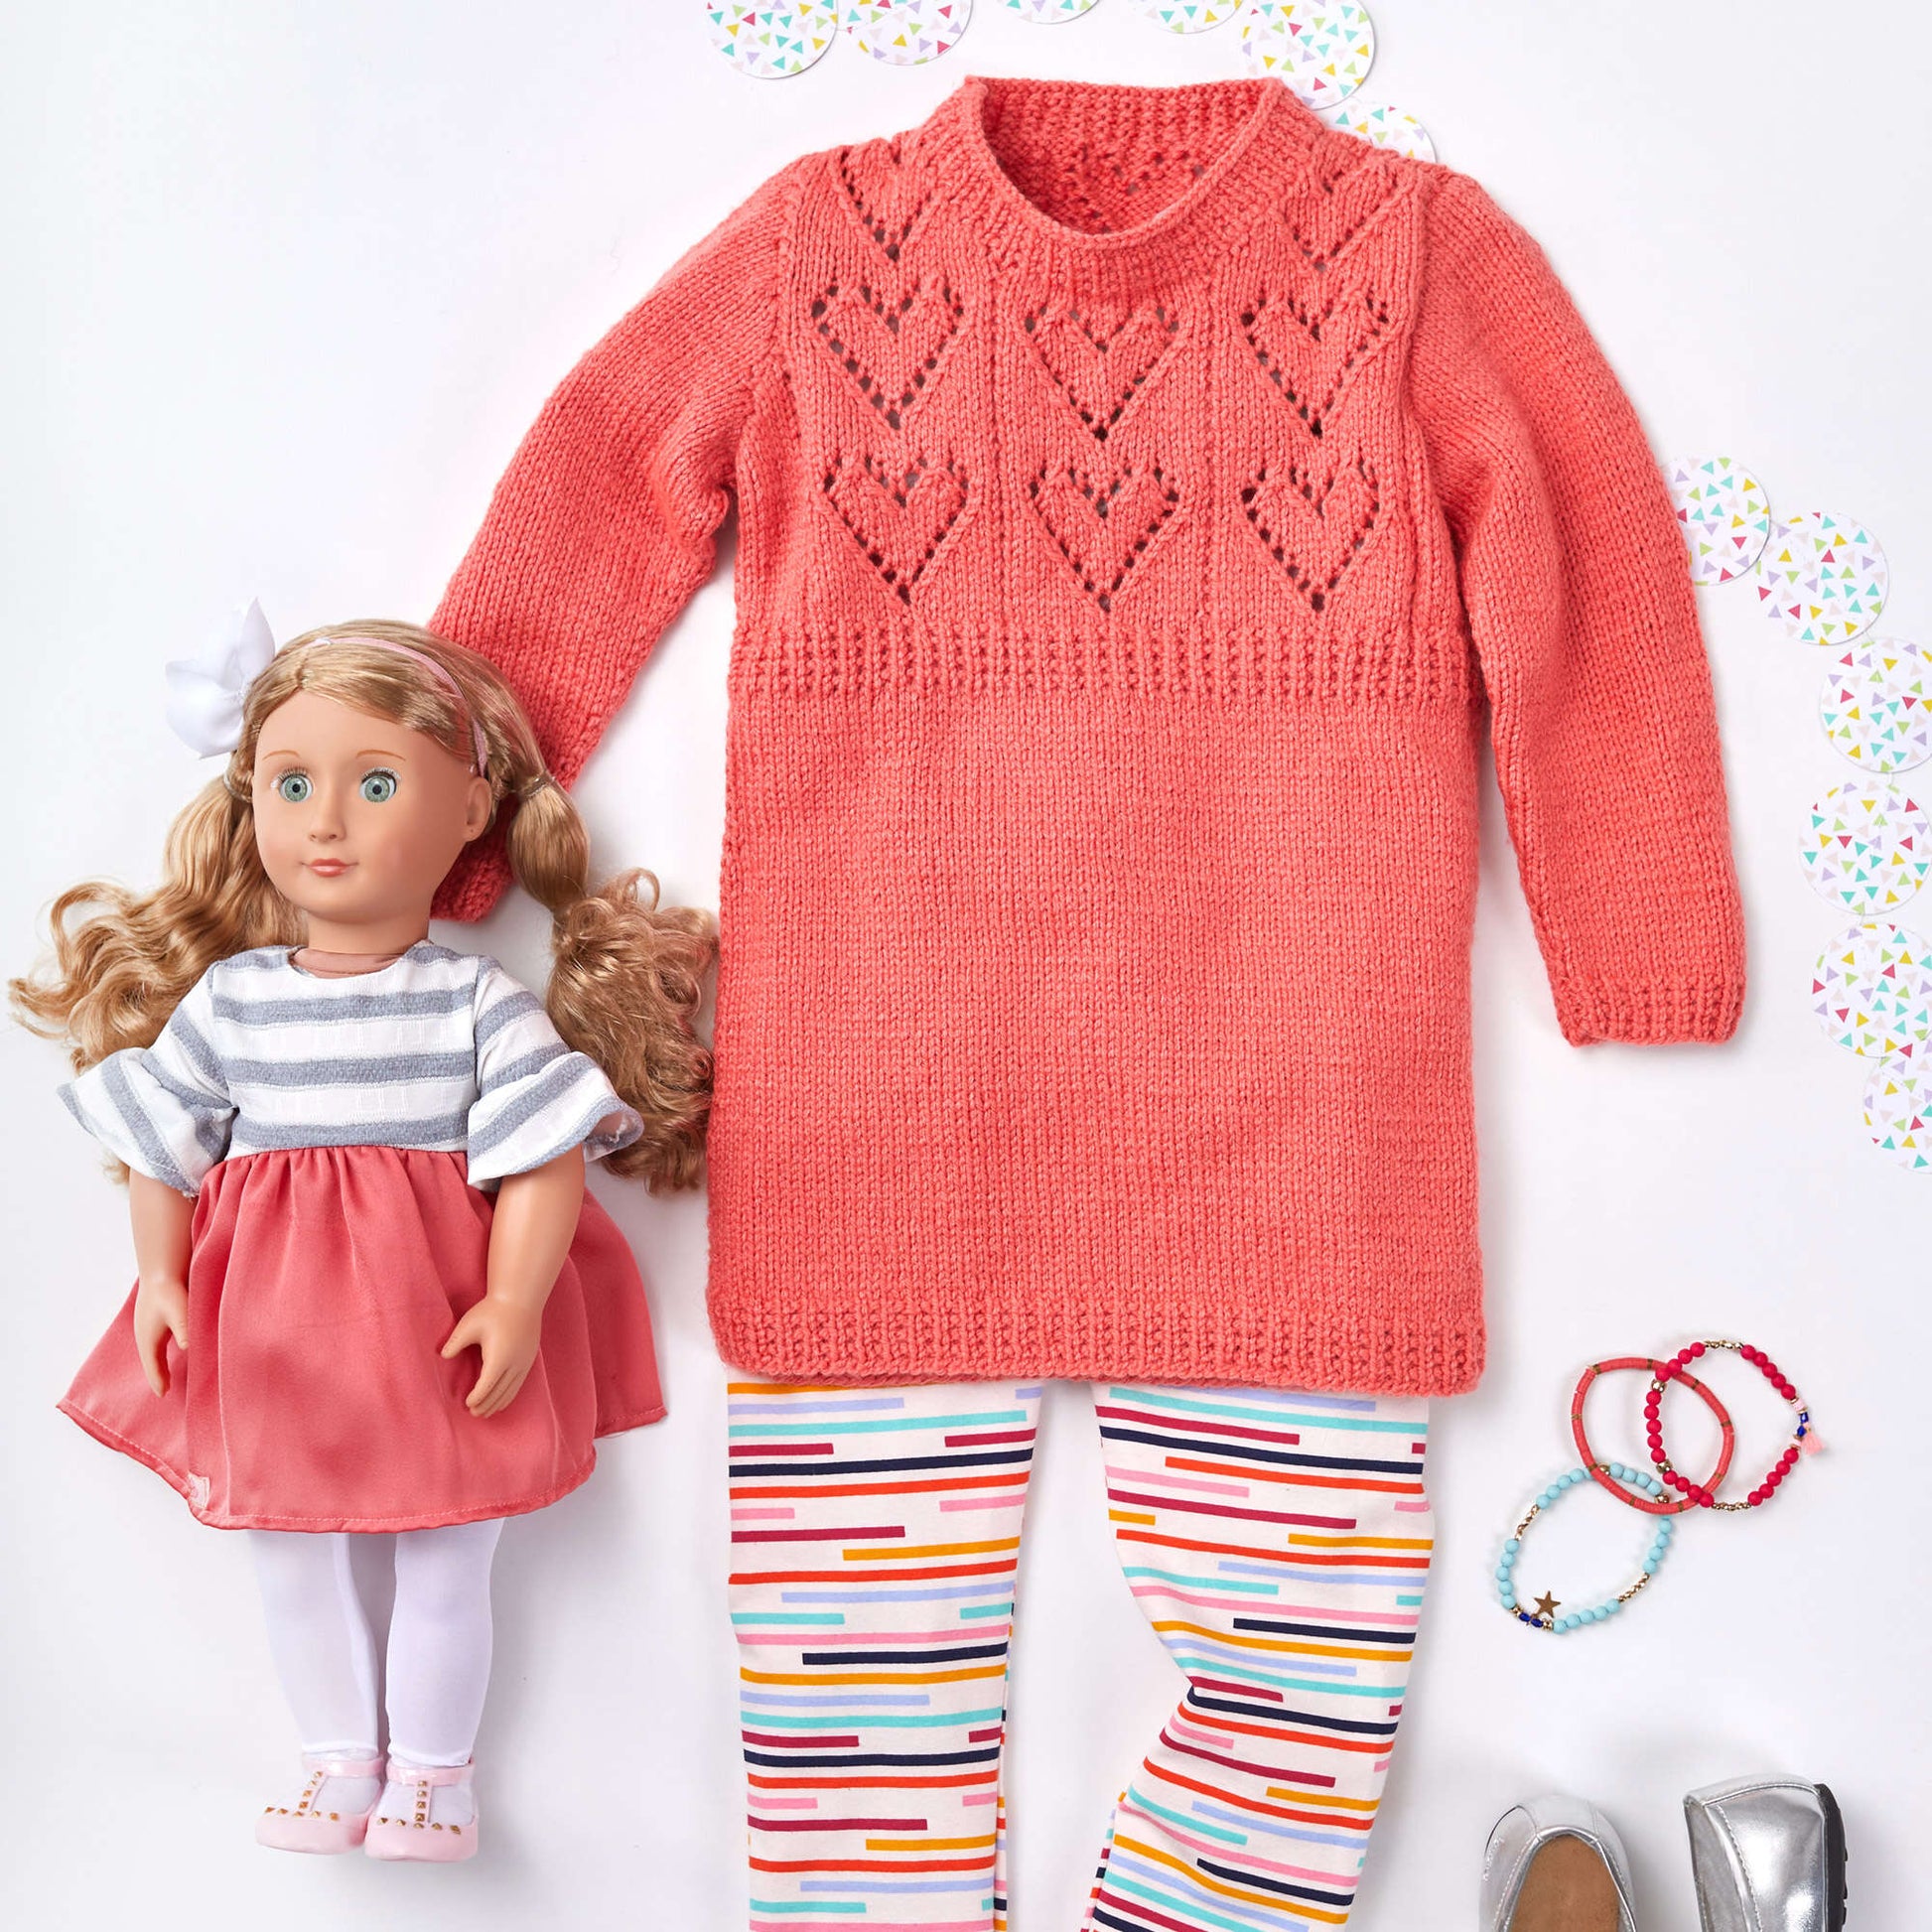 Free Red Heart Child's Heart Yoke Tunic Knit Pattern